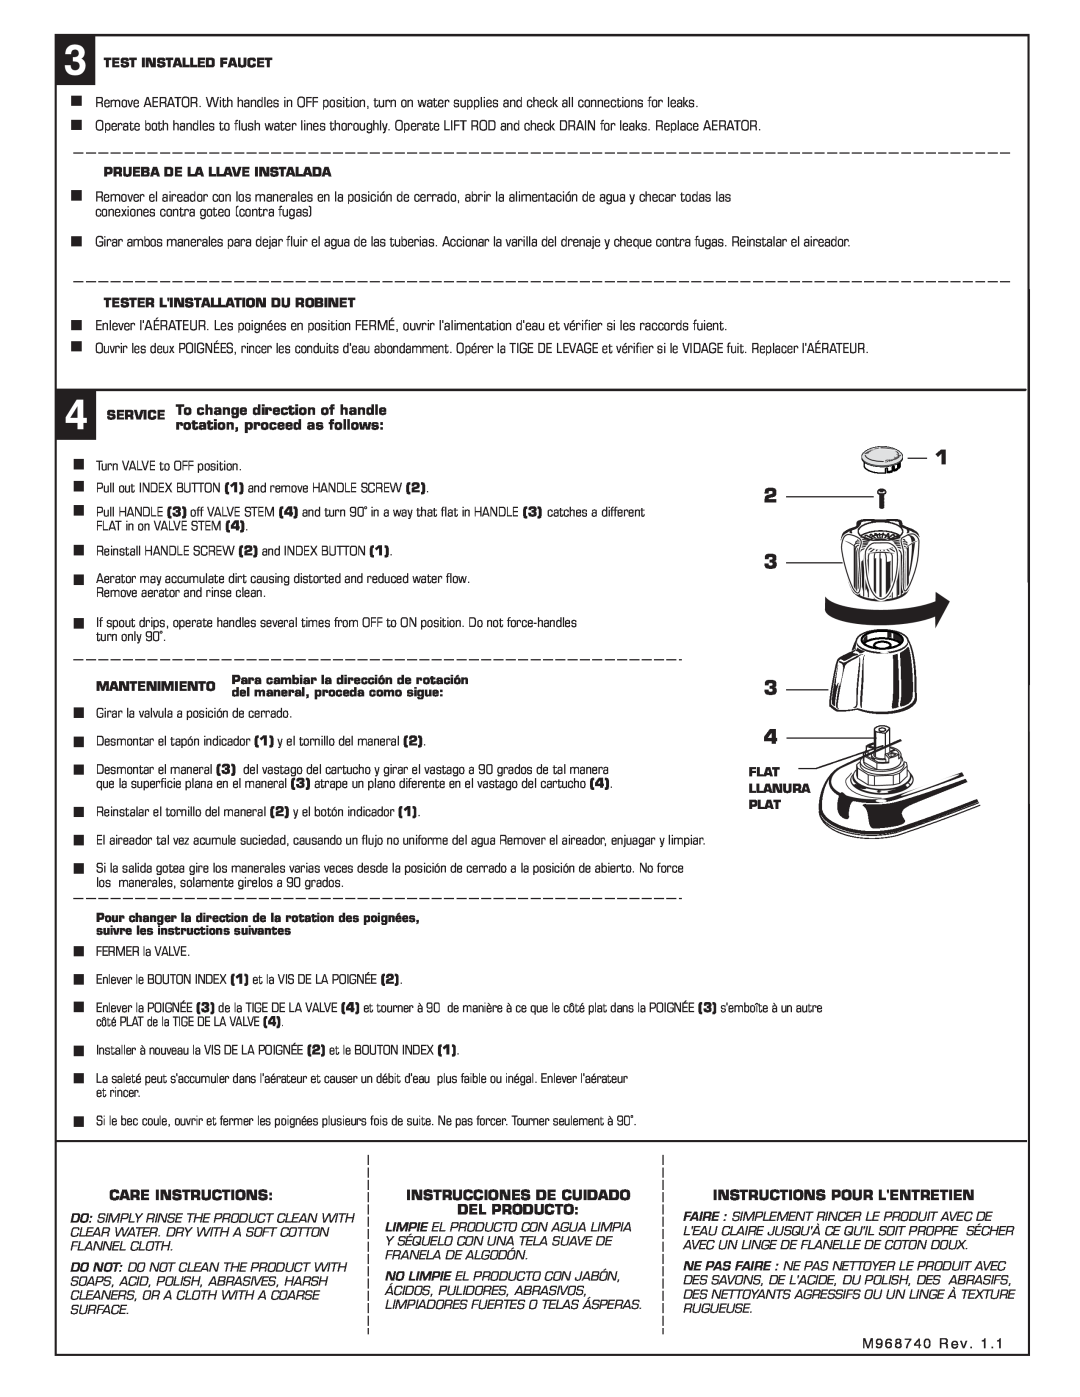 American Standard 2475 rotation, proceed as follows, Care Instructions, Instrucciones De Cuidado Del Producto 